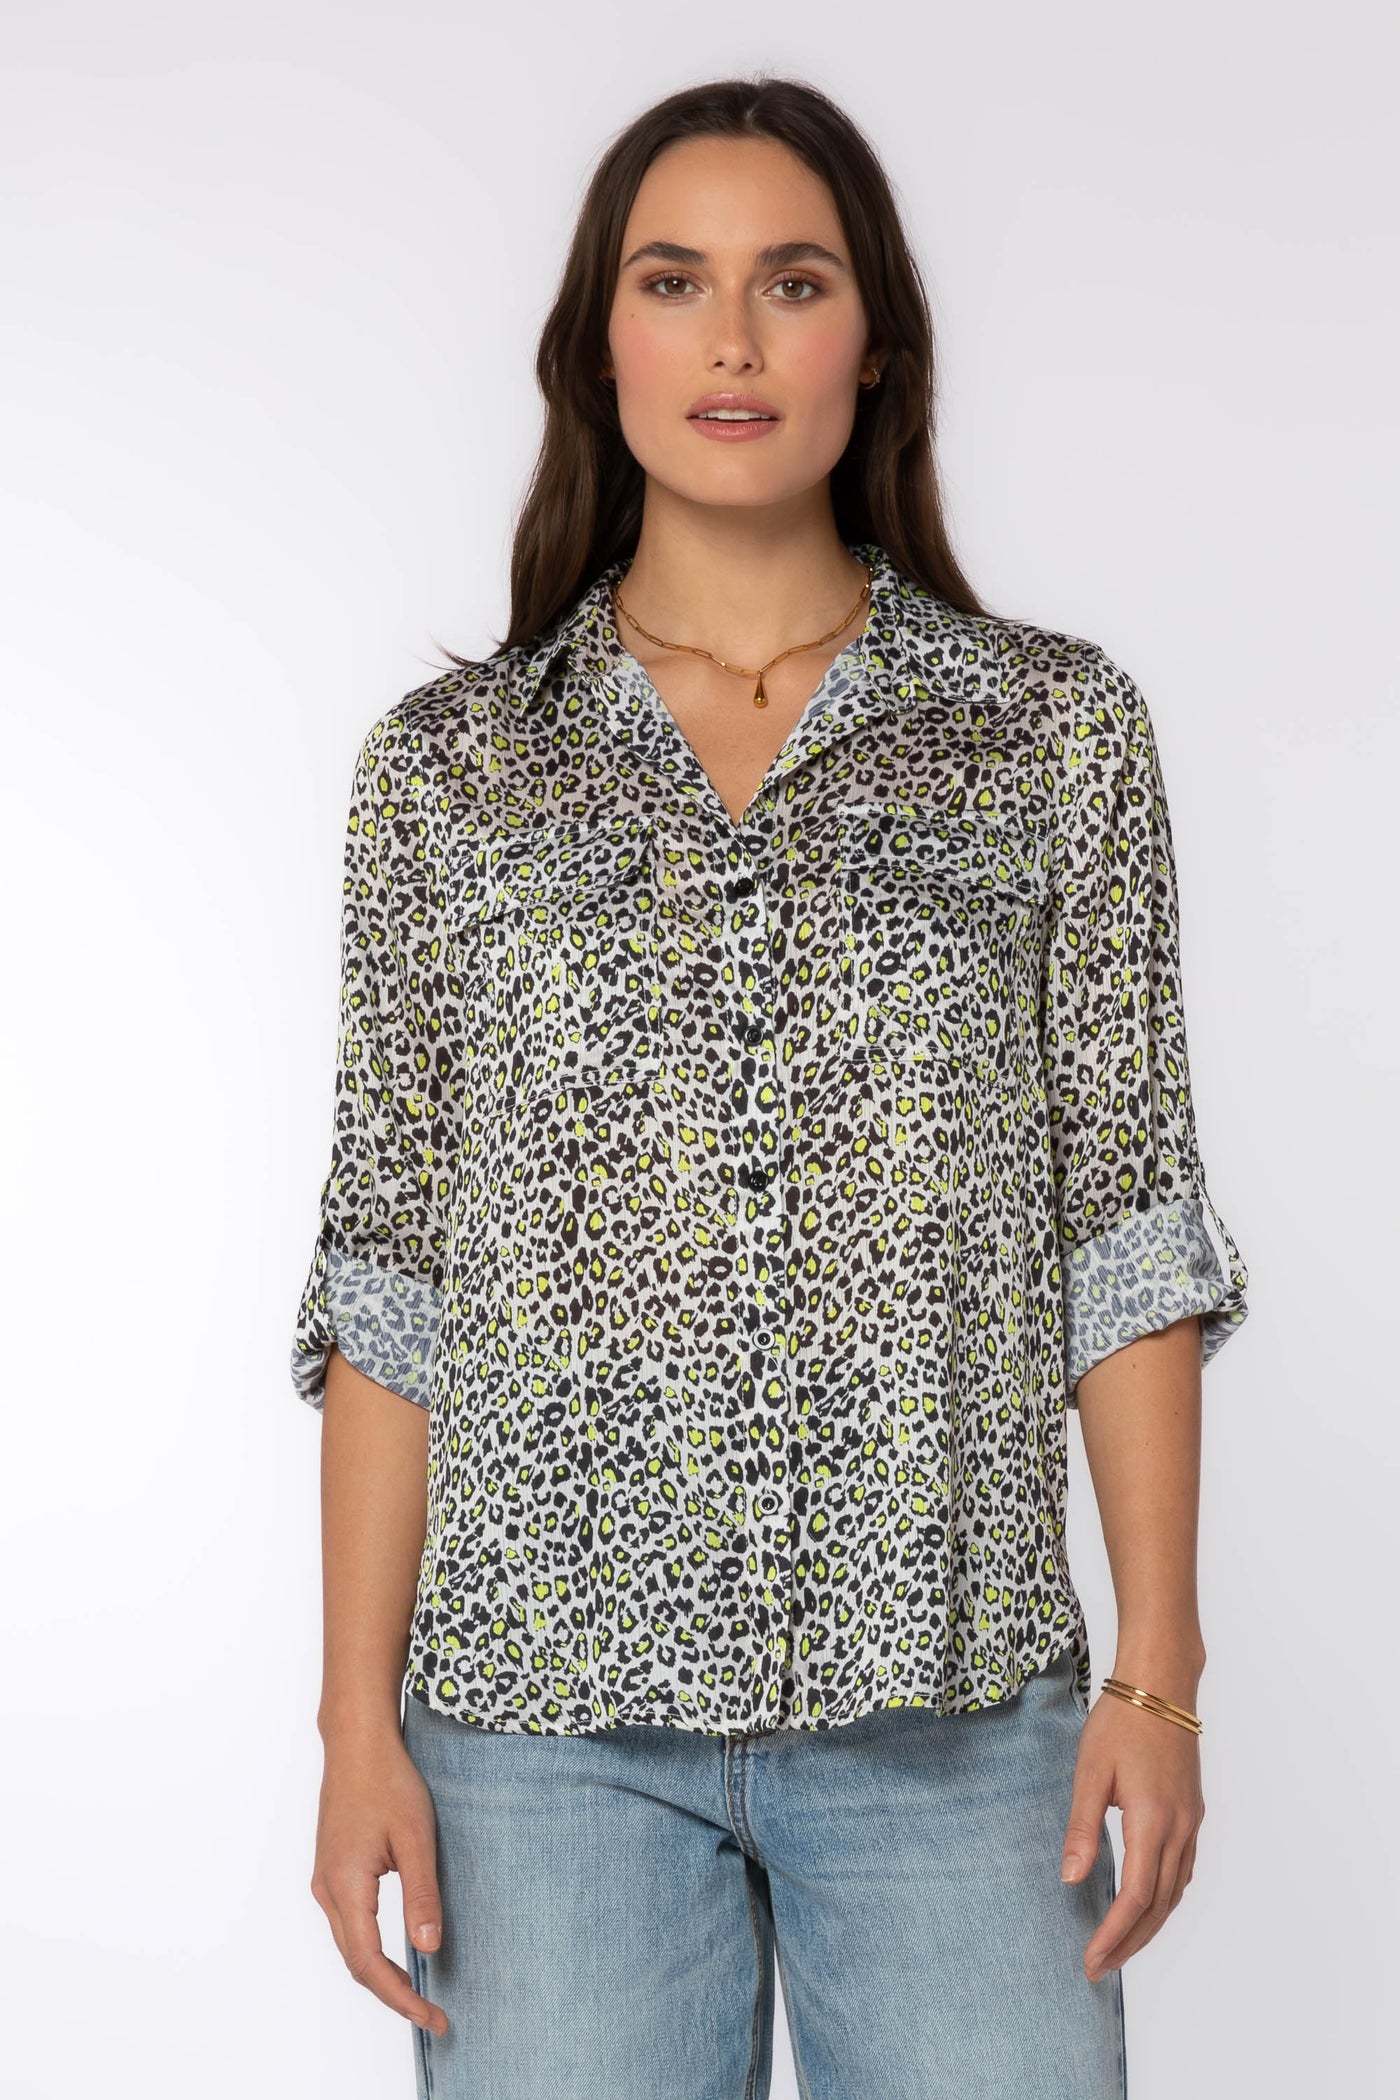 Talma Shirt - Tops - Velvet Heart Clothing